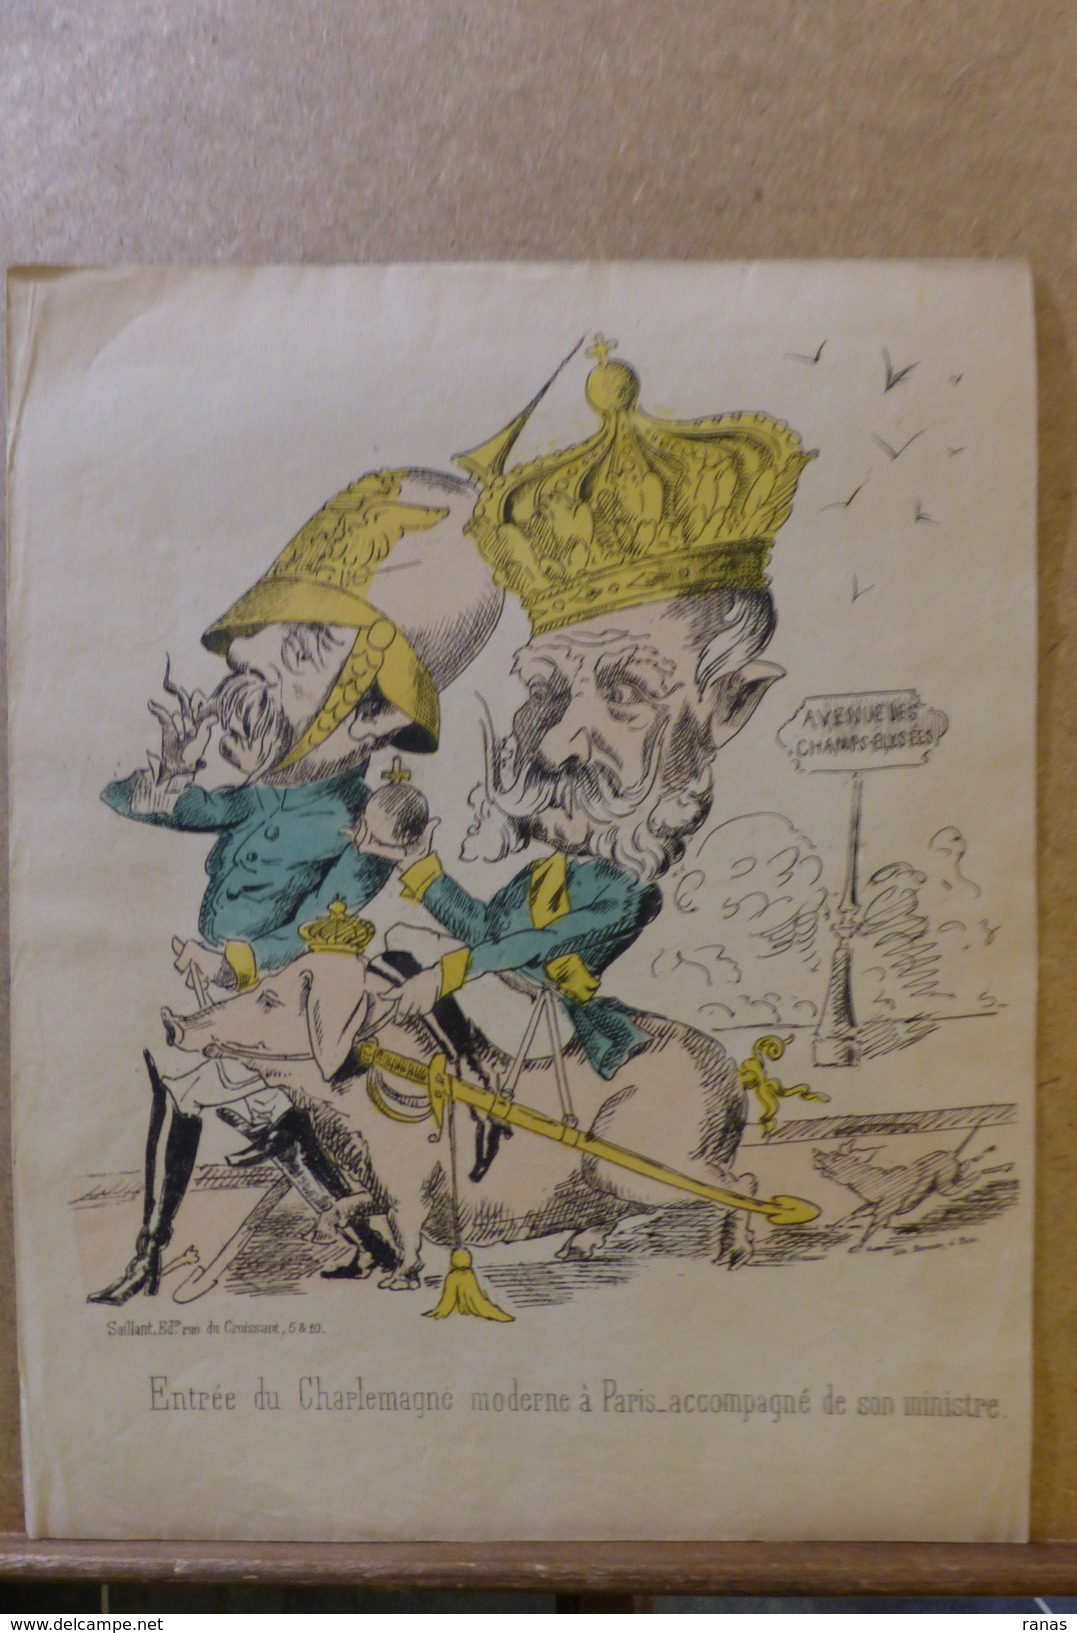 Estampe Gravure Satirique Caricature D'époque 1870 Bismarck Cochon Pig Guillaume Paris 35,5 X 28 - Estampas & Grabados